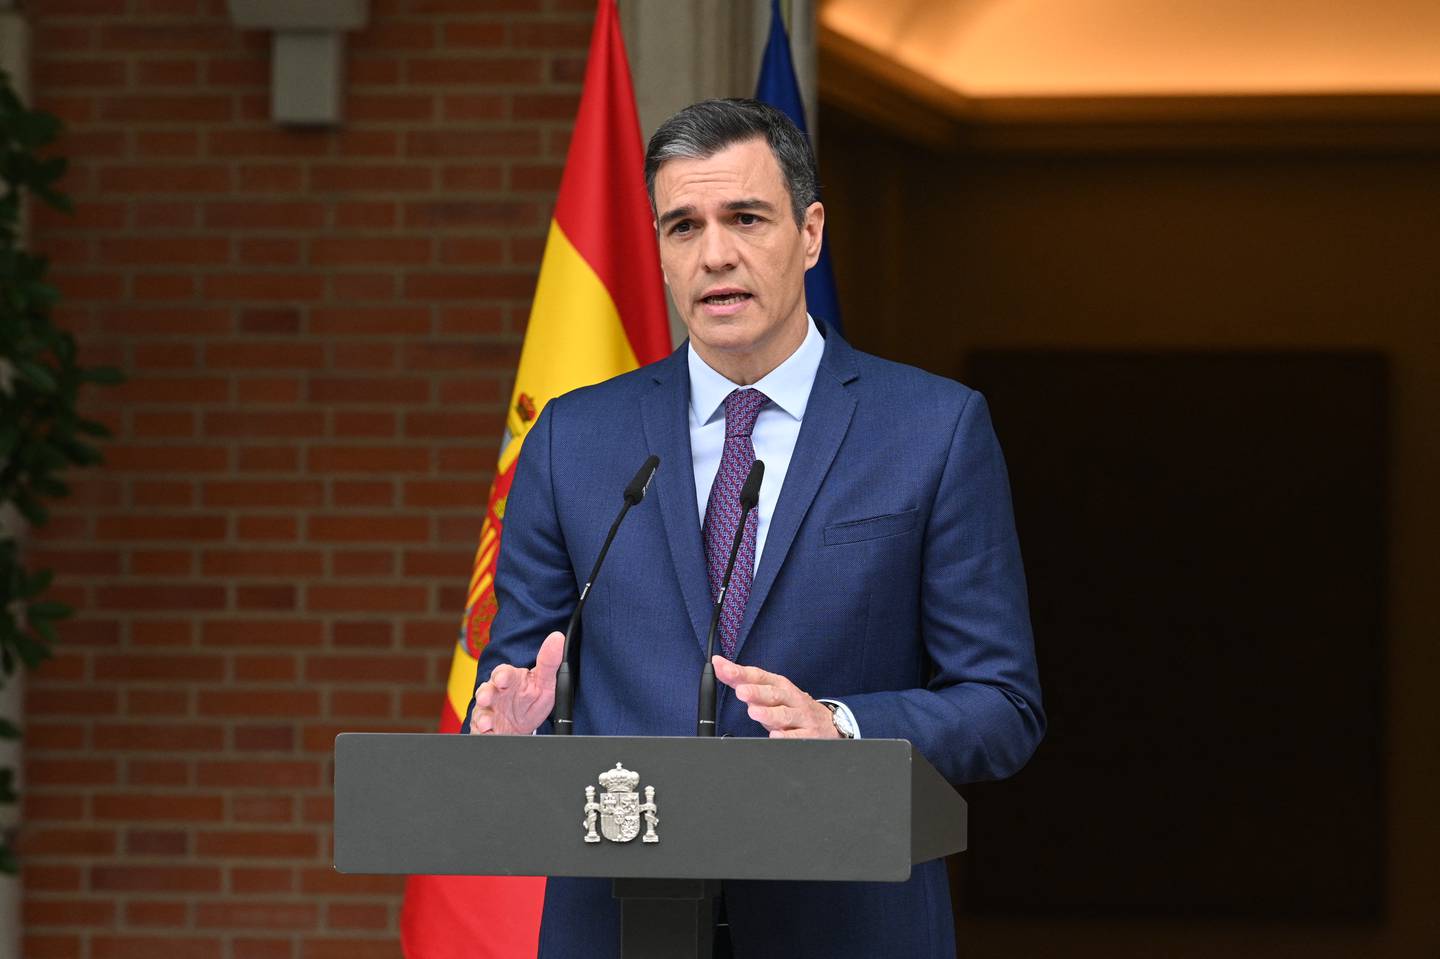 El presidente del gobierno español, el socialista Pedro Sánchez, tiene asegurados ya los votos para ser investido por el Parlamento para un nuevo mandato